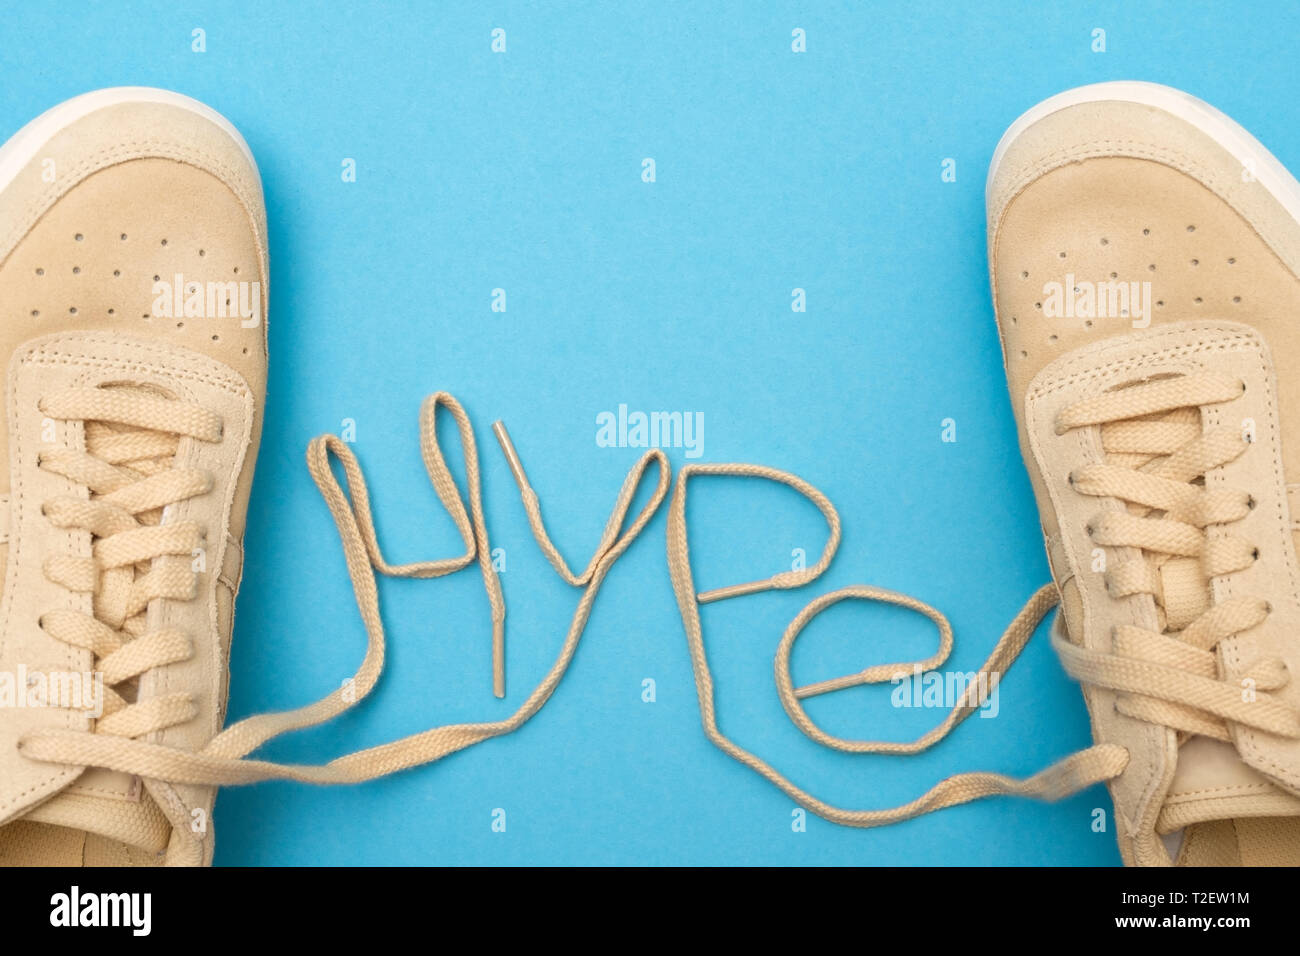 hype shoe laces